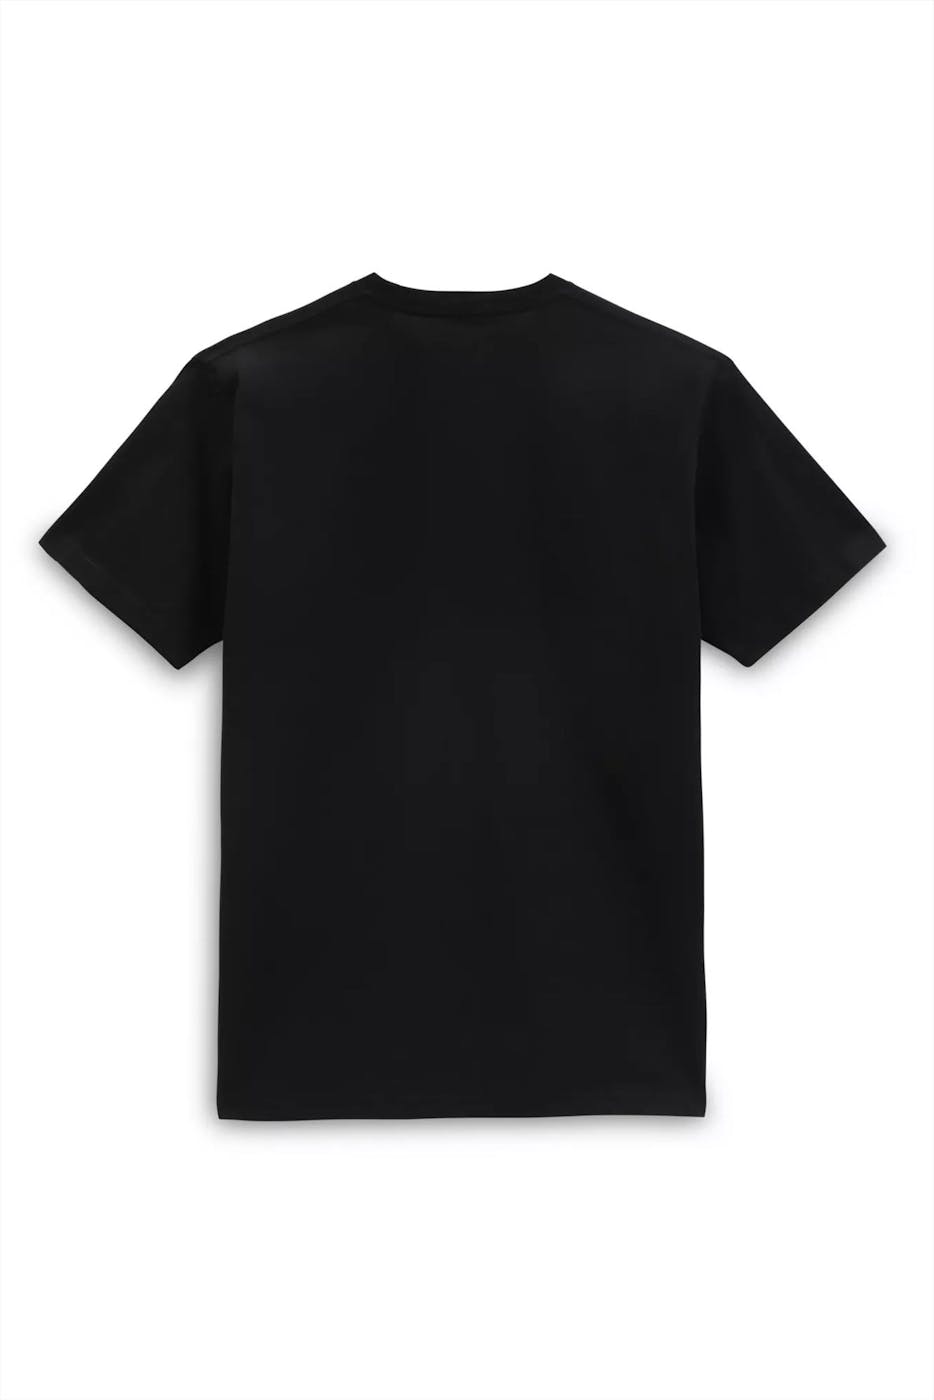 Vans  - Zwarte Bones t-shirt